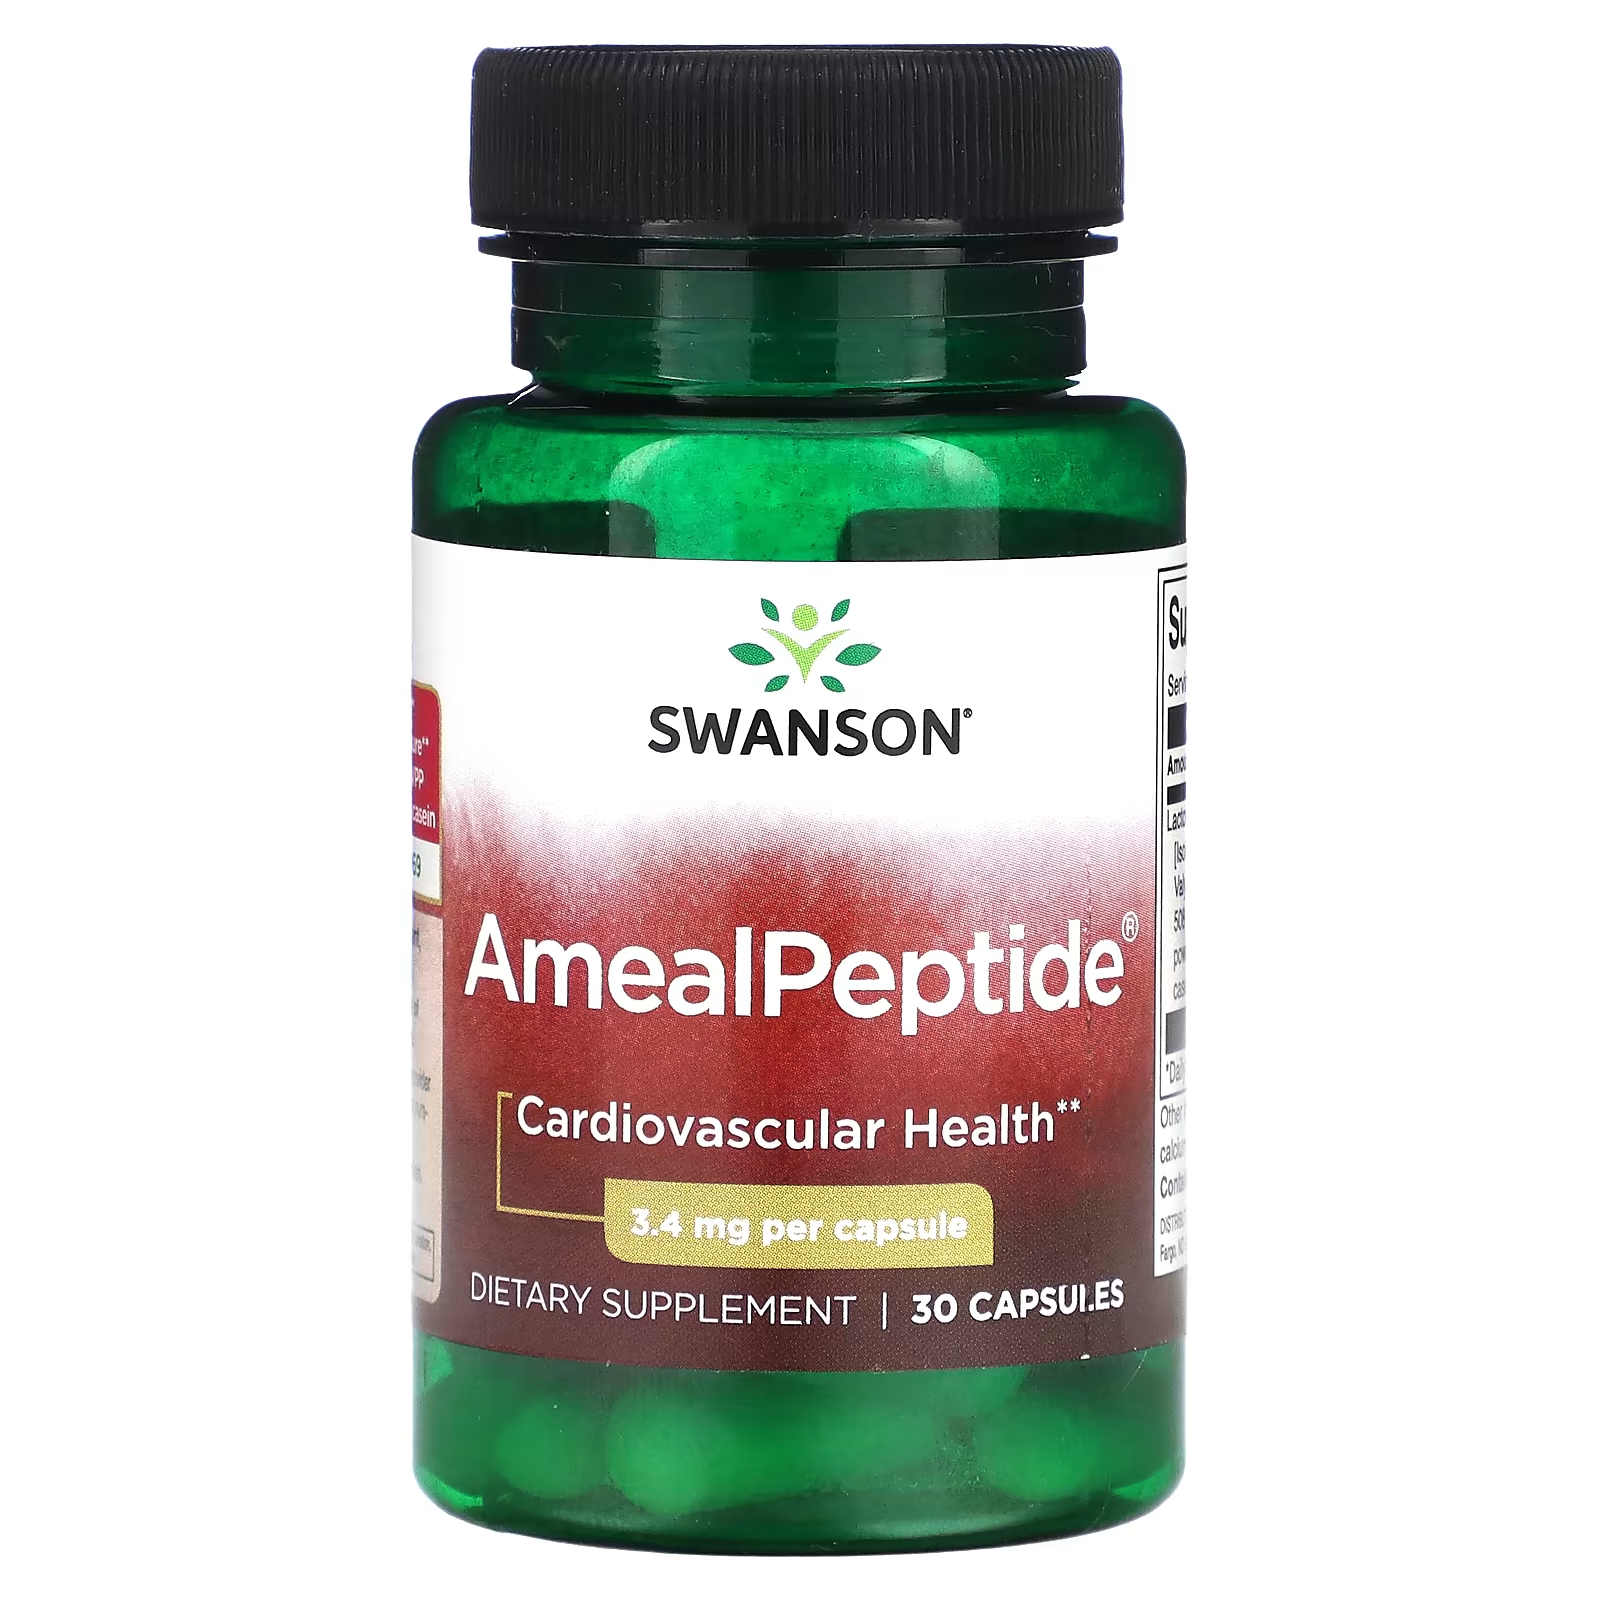 Пищевая добавка Swanson AmealPeptide 34 мг, 30 капсул пищевая добавка swanson pqq 10 мг 30 растительных капсул